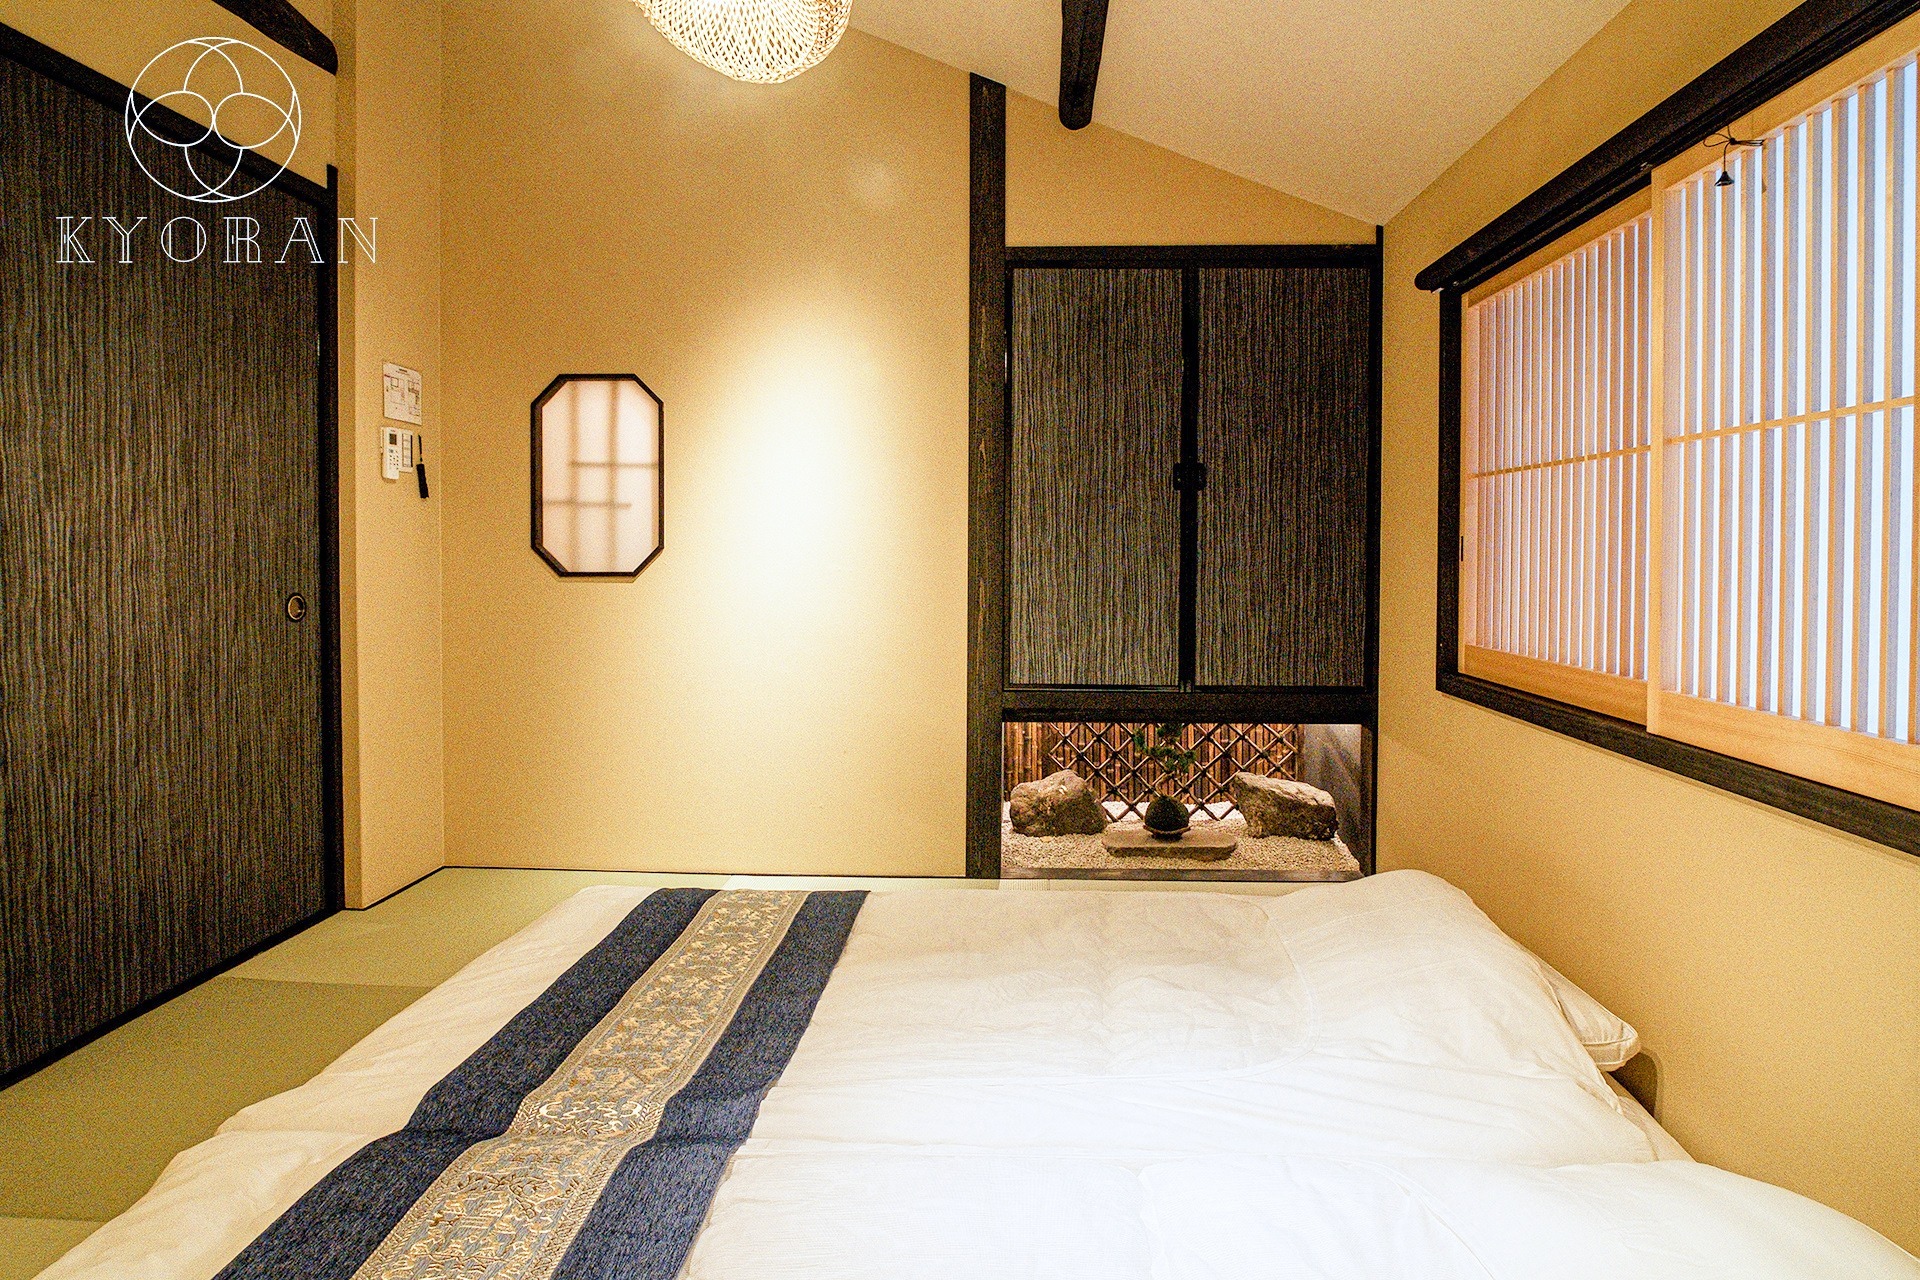 【梅宮町】祇園まで徒歩7分、露天風呂とバーカウンターと内装デザインを楽しむ一棟貸し